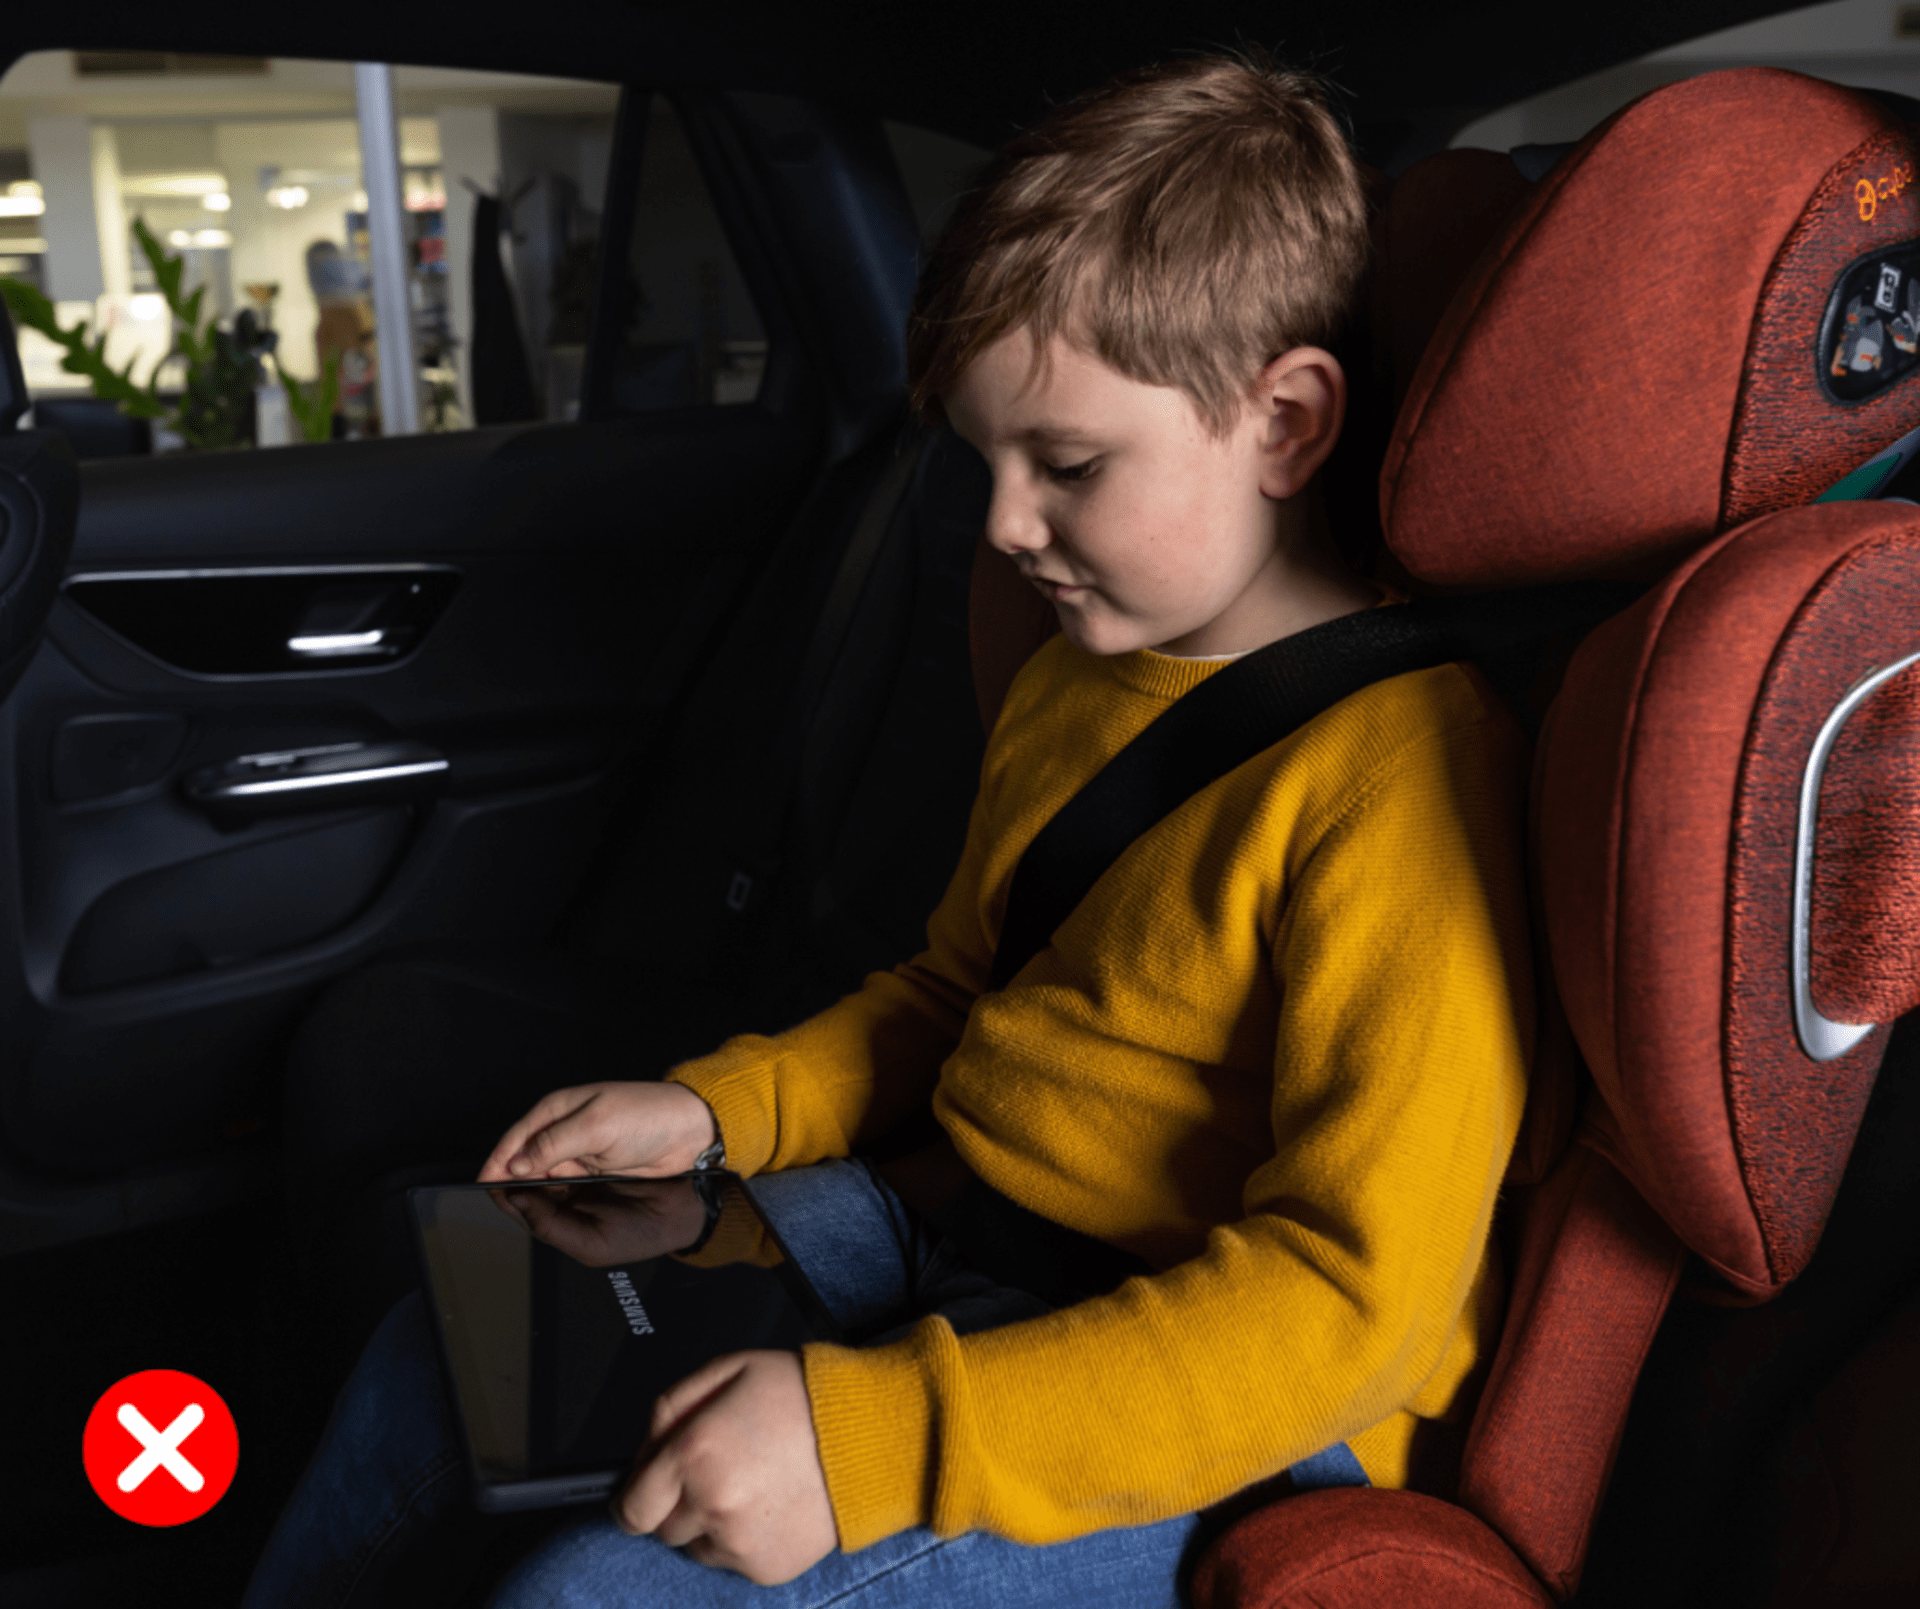 Tvrdé hračky (vč. telefonů a tabletů) dětem za jízdy nepatří do ruky.